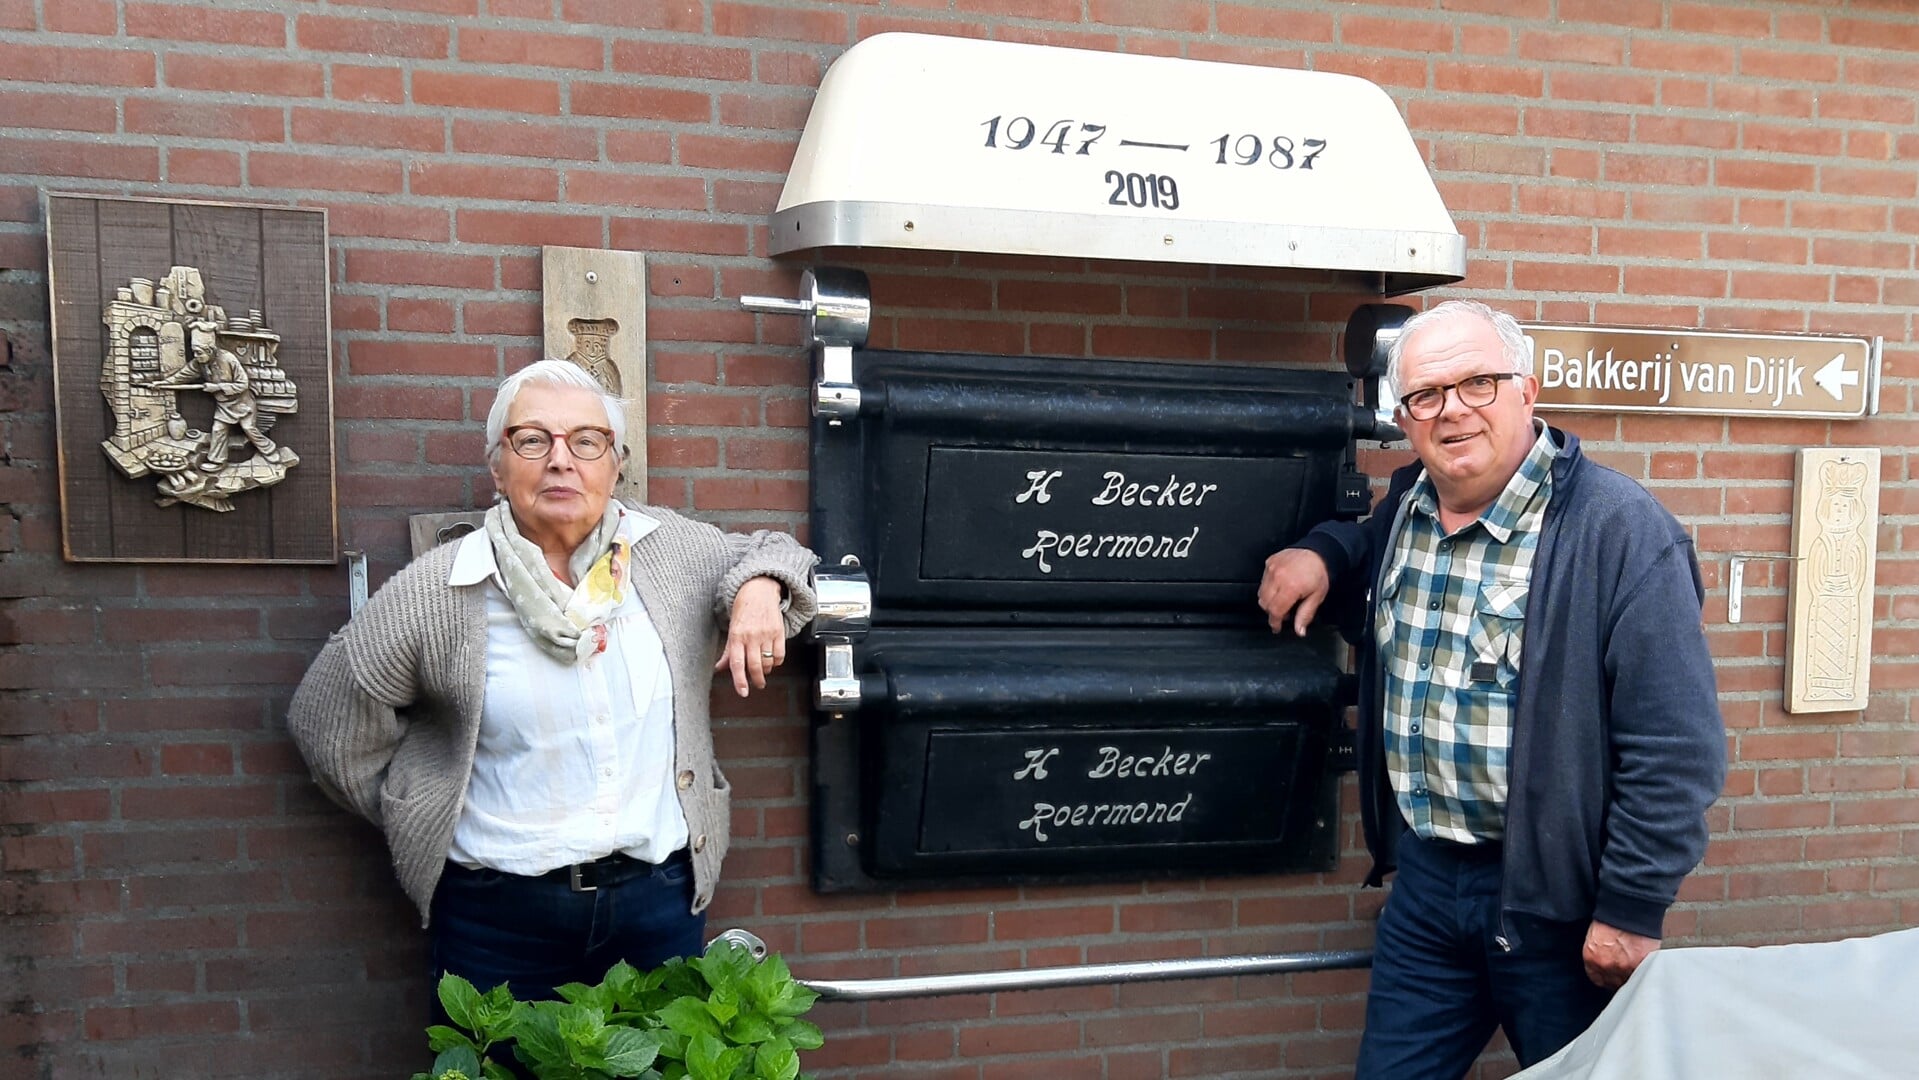 Els en Twan van Dijk poseerden graag bij hun ‘ ovenmuur ‘ in de tuin van hun bungalow achter de bakkerij in Beers.